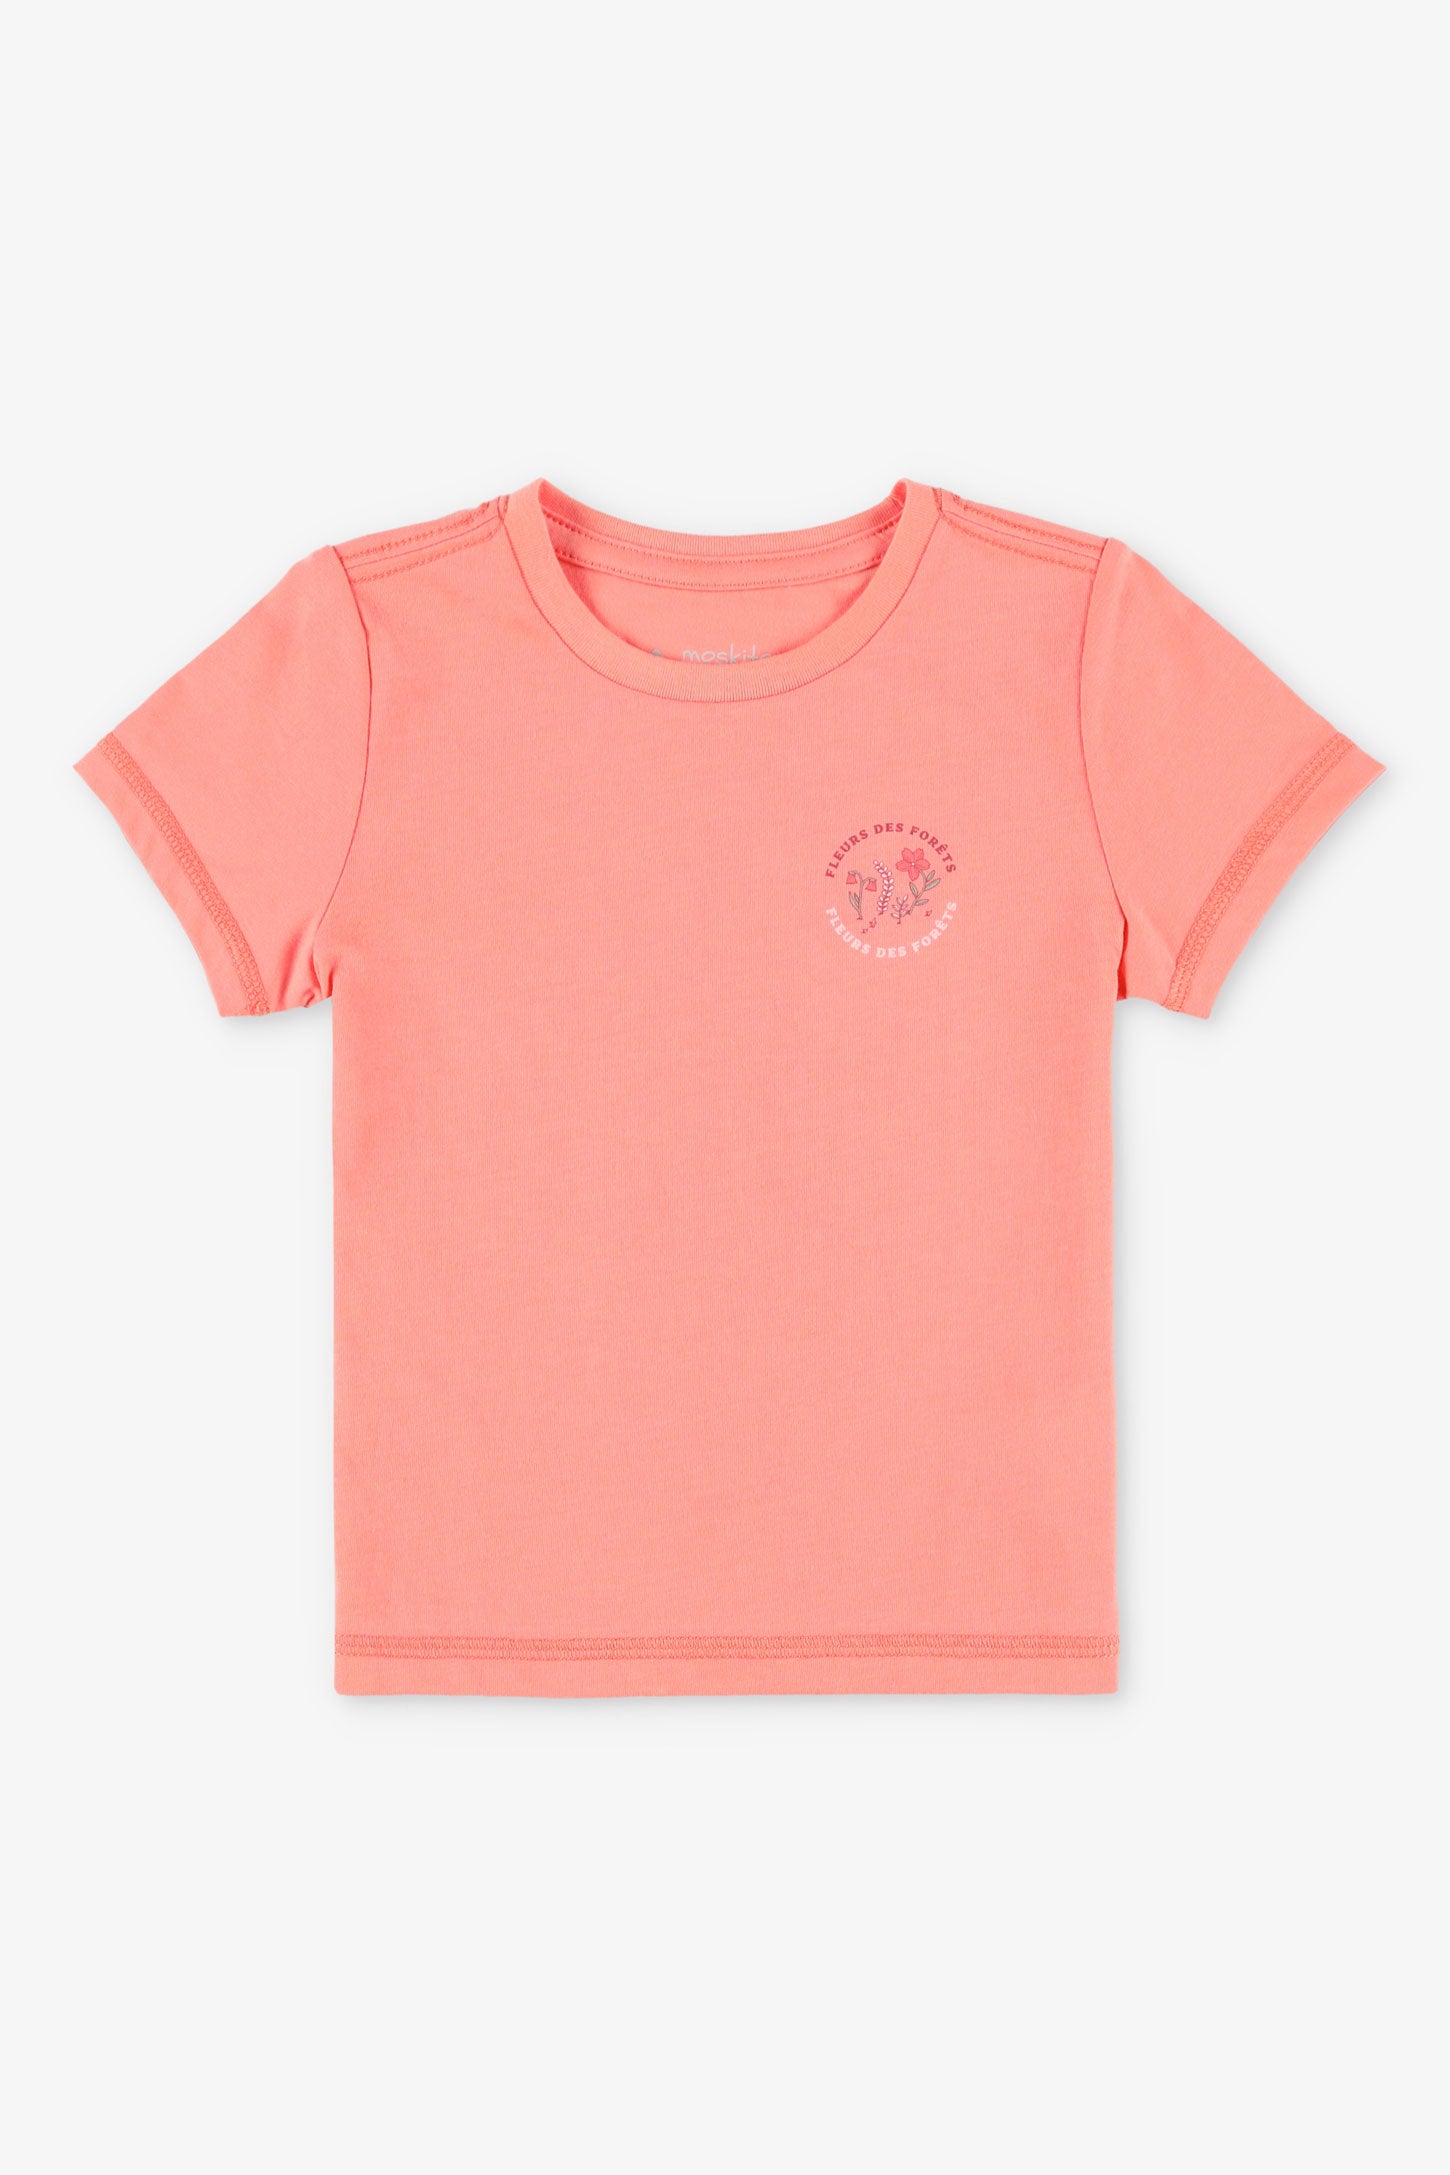 T-shirt col rond coton bio BM, 2T-3T, 2/25$ - Bébé fille && ROSE